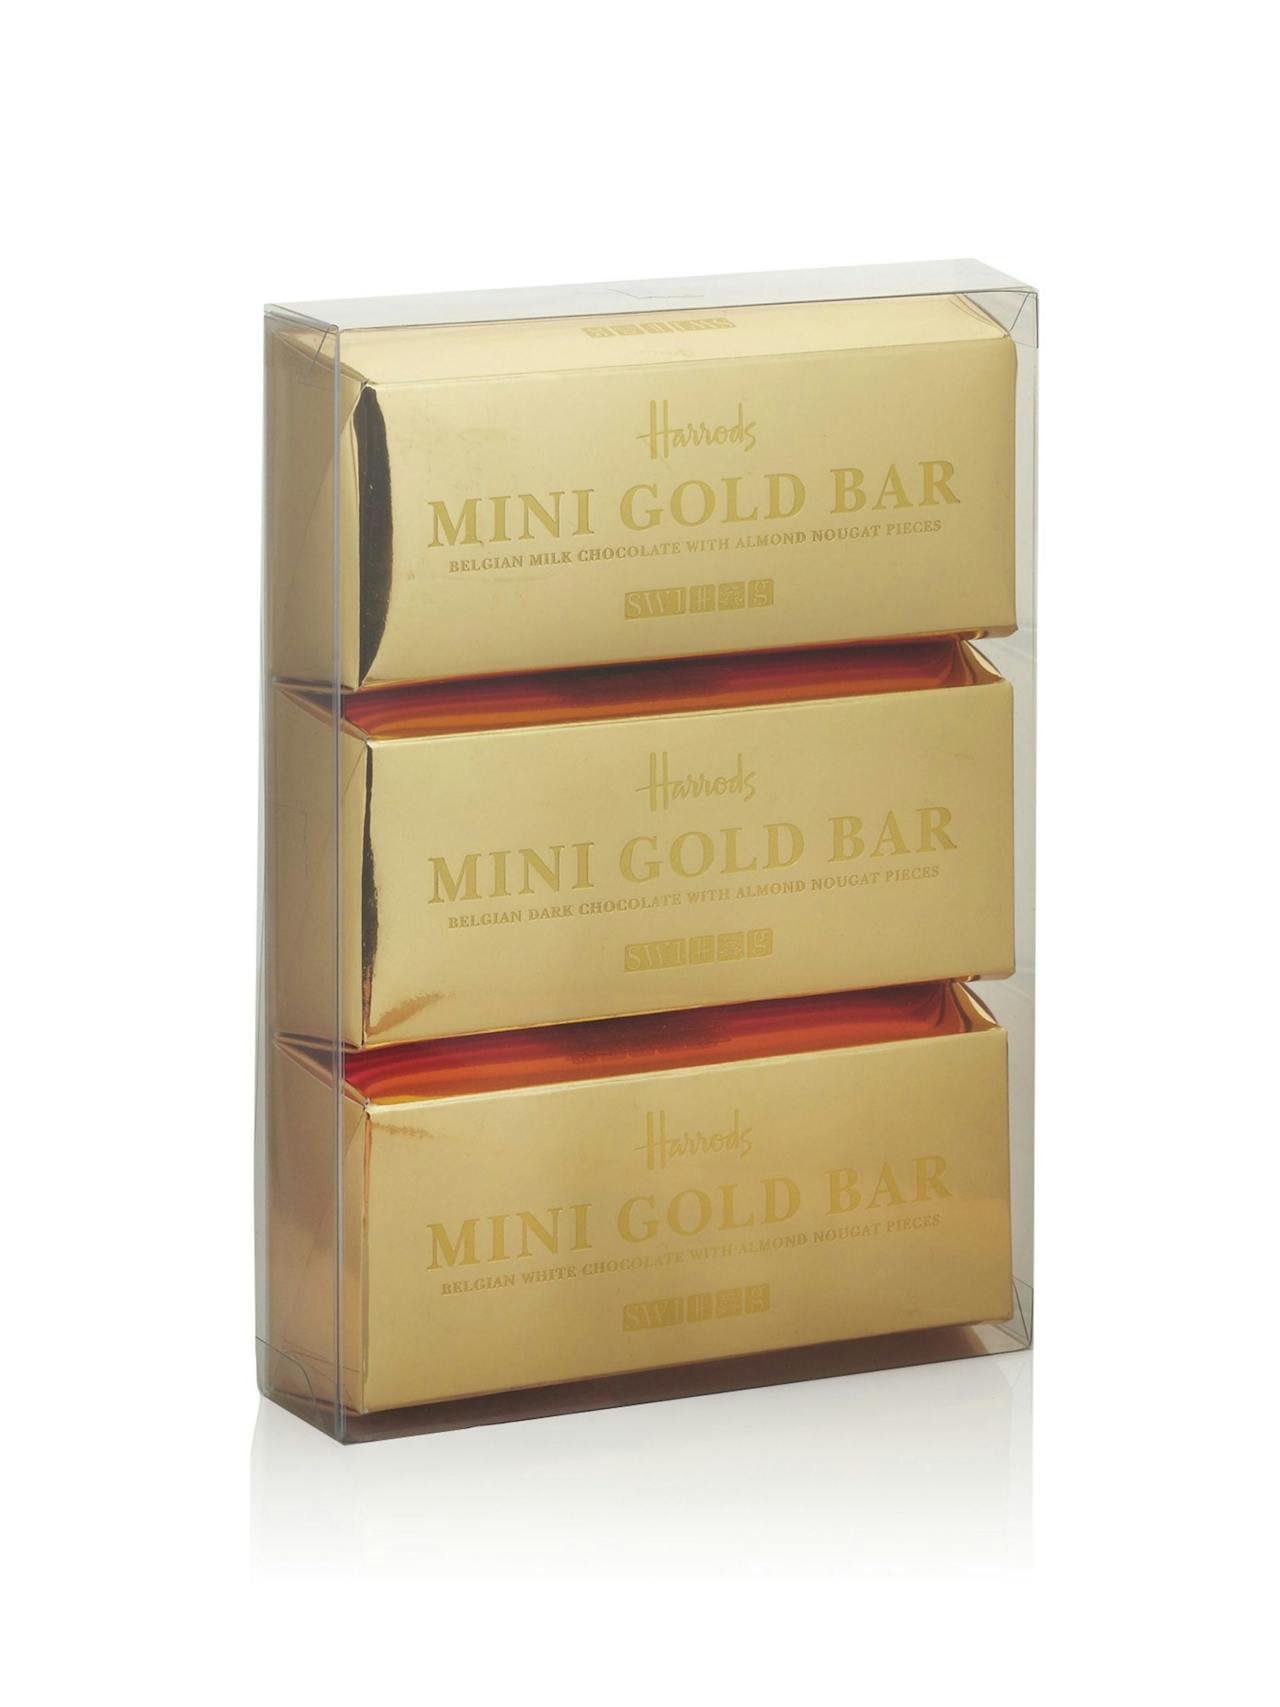 Mini gold bars choclate